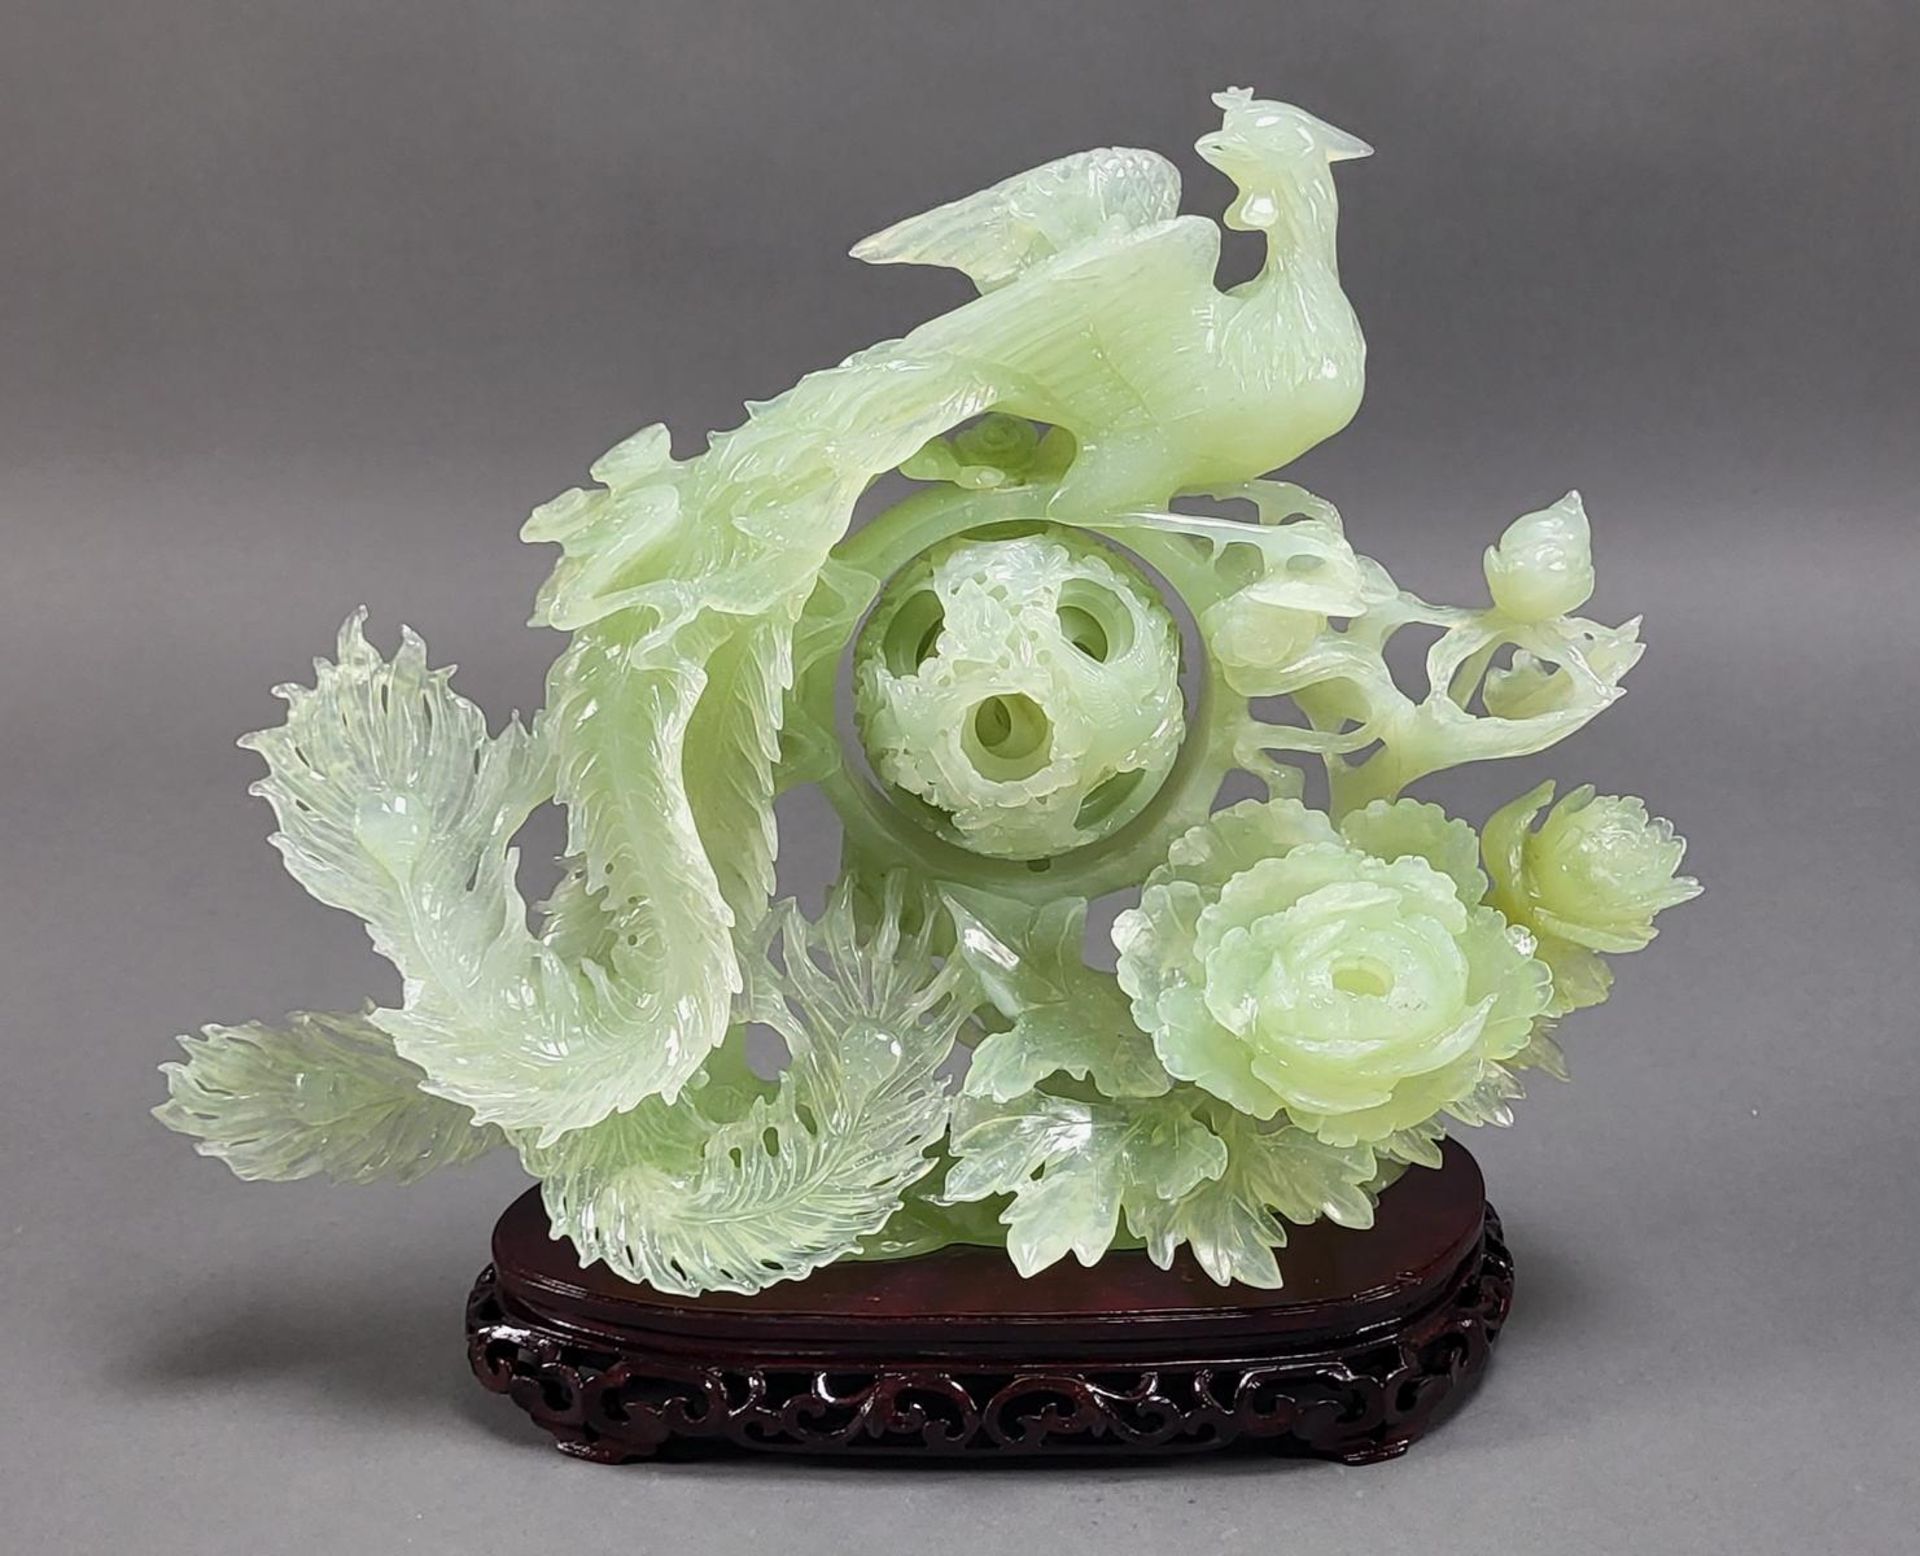 Jadeskulptur, Phönix auf Blumenstrauch mit Wunderkugel - Image 2 of 5